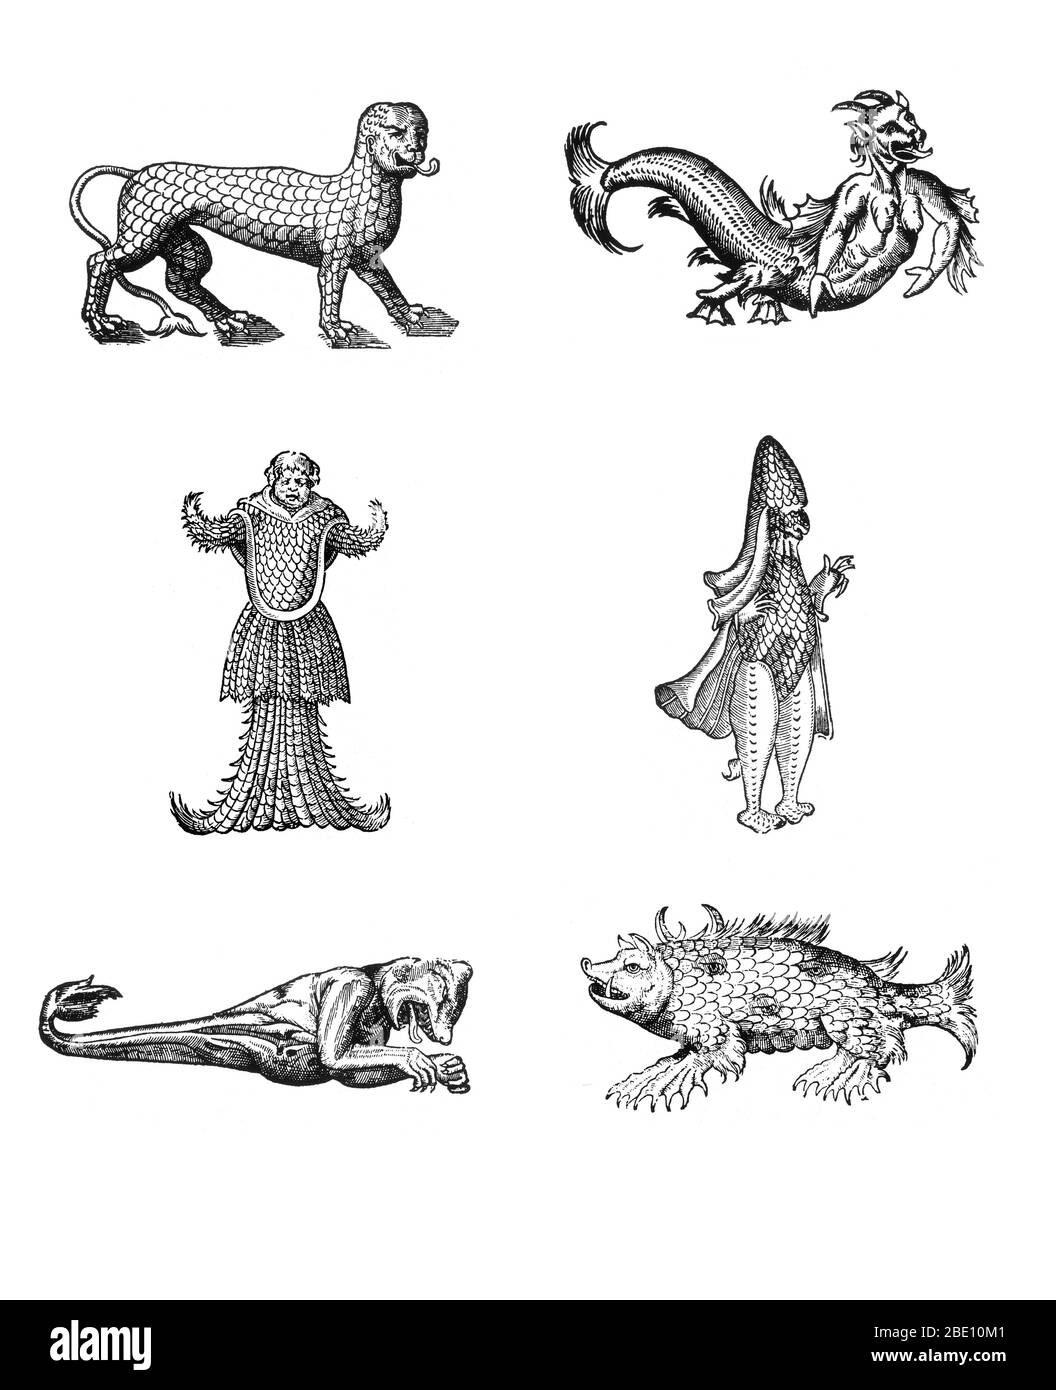 Tagli di legno di mostri marini di Des Monstres et prodiges di Ambroise Paré, 1573, in senso orario dall'alto a sinistra: 'Leone marino coperto di scale', 'figura orrida di un diavolo marino', 'mostro marino che assomiglia a un vescovo vestito con le sue vesti pontificie', 'scrofa marine', "Mostro marino con testa di orso e braccia di scimmia", mostro marino con testa di monaco, armato e coperto di squame di pesce". Des Monstres è pieno di racconti ingiustificati di diavoli marini, scrofe marine e animali mostruosi con volti umani. Con la sua ampia discussione sulla riproduzione e le illustrazioni della nascita Foto Stock